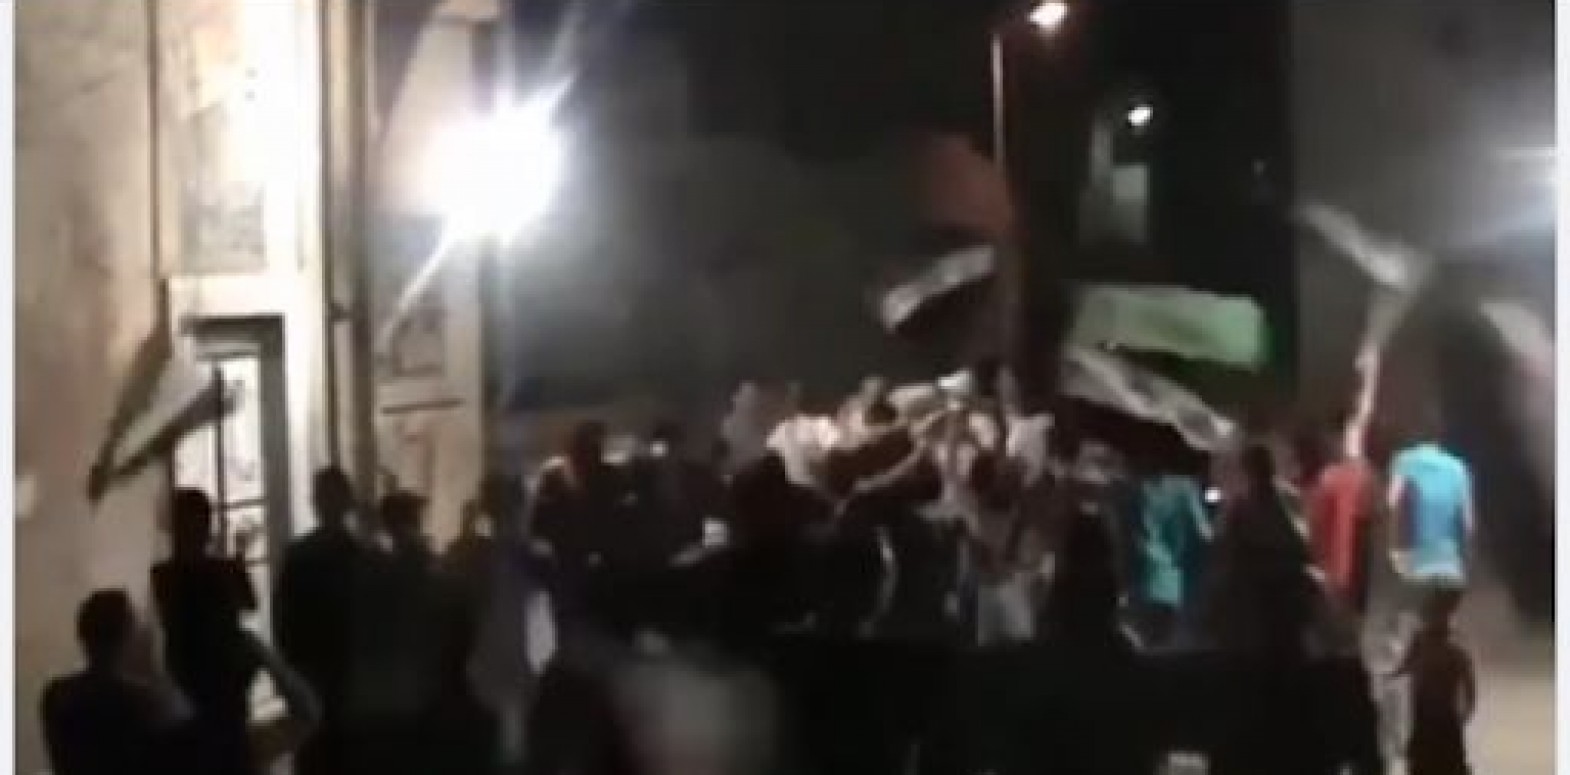 هل خرجت مظاهرة ضد النظام في حي الشيخ عنبر بمدينة حماة مؤخراً؟